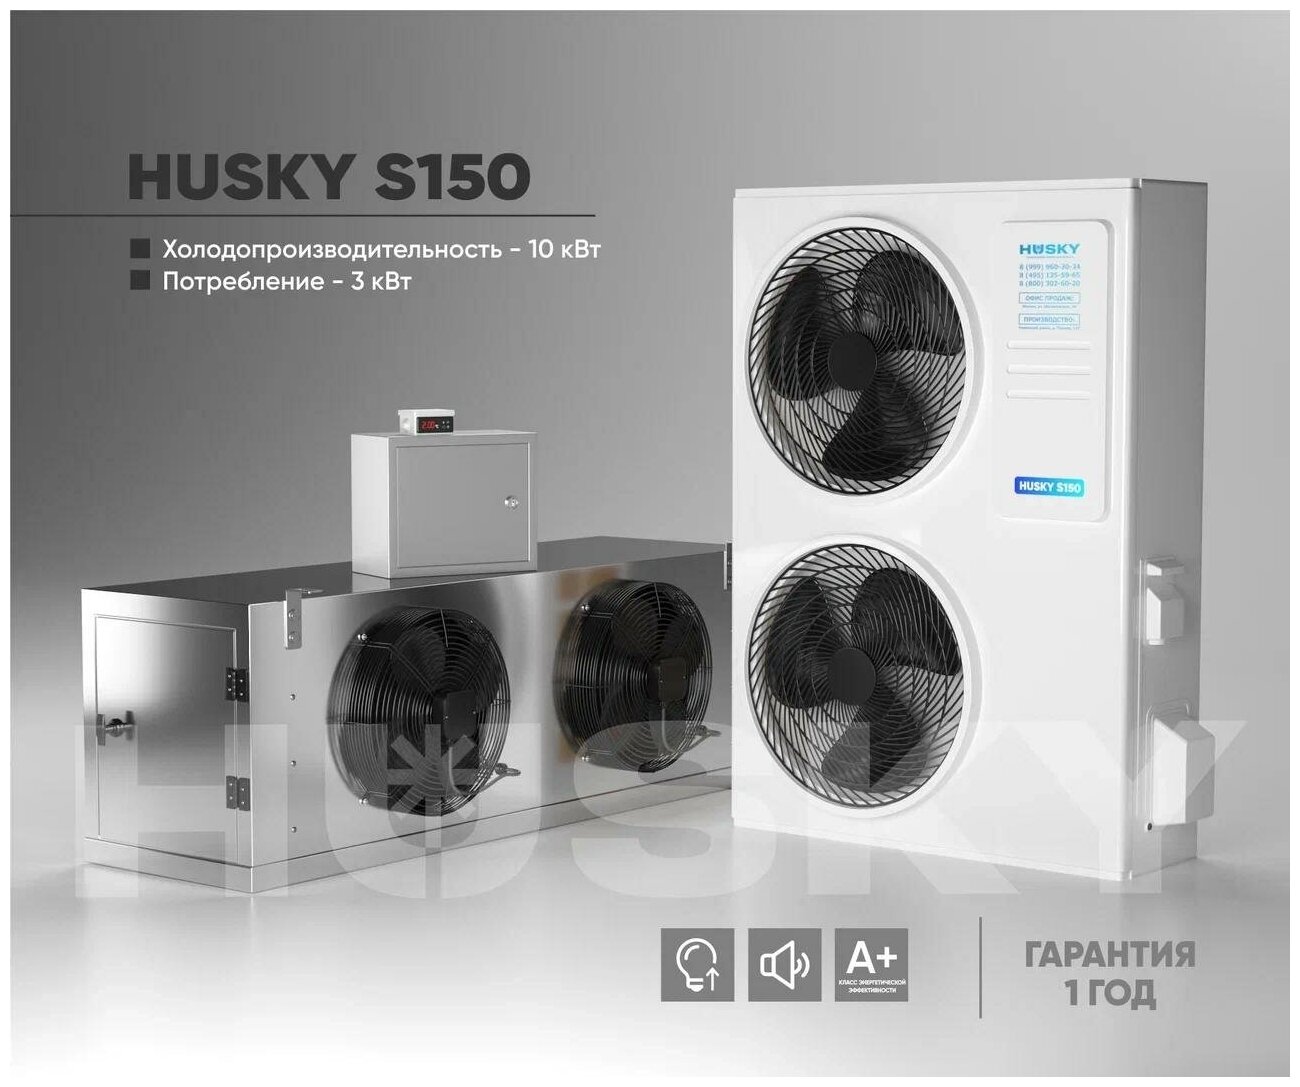 Холодильная установка HUSKY S150